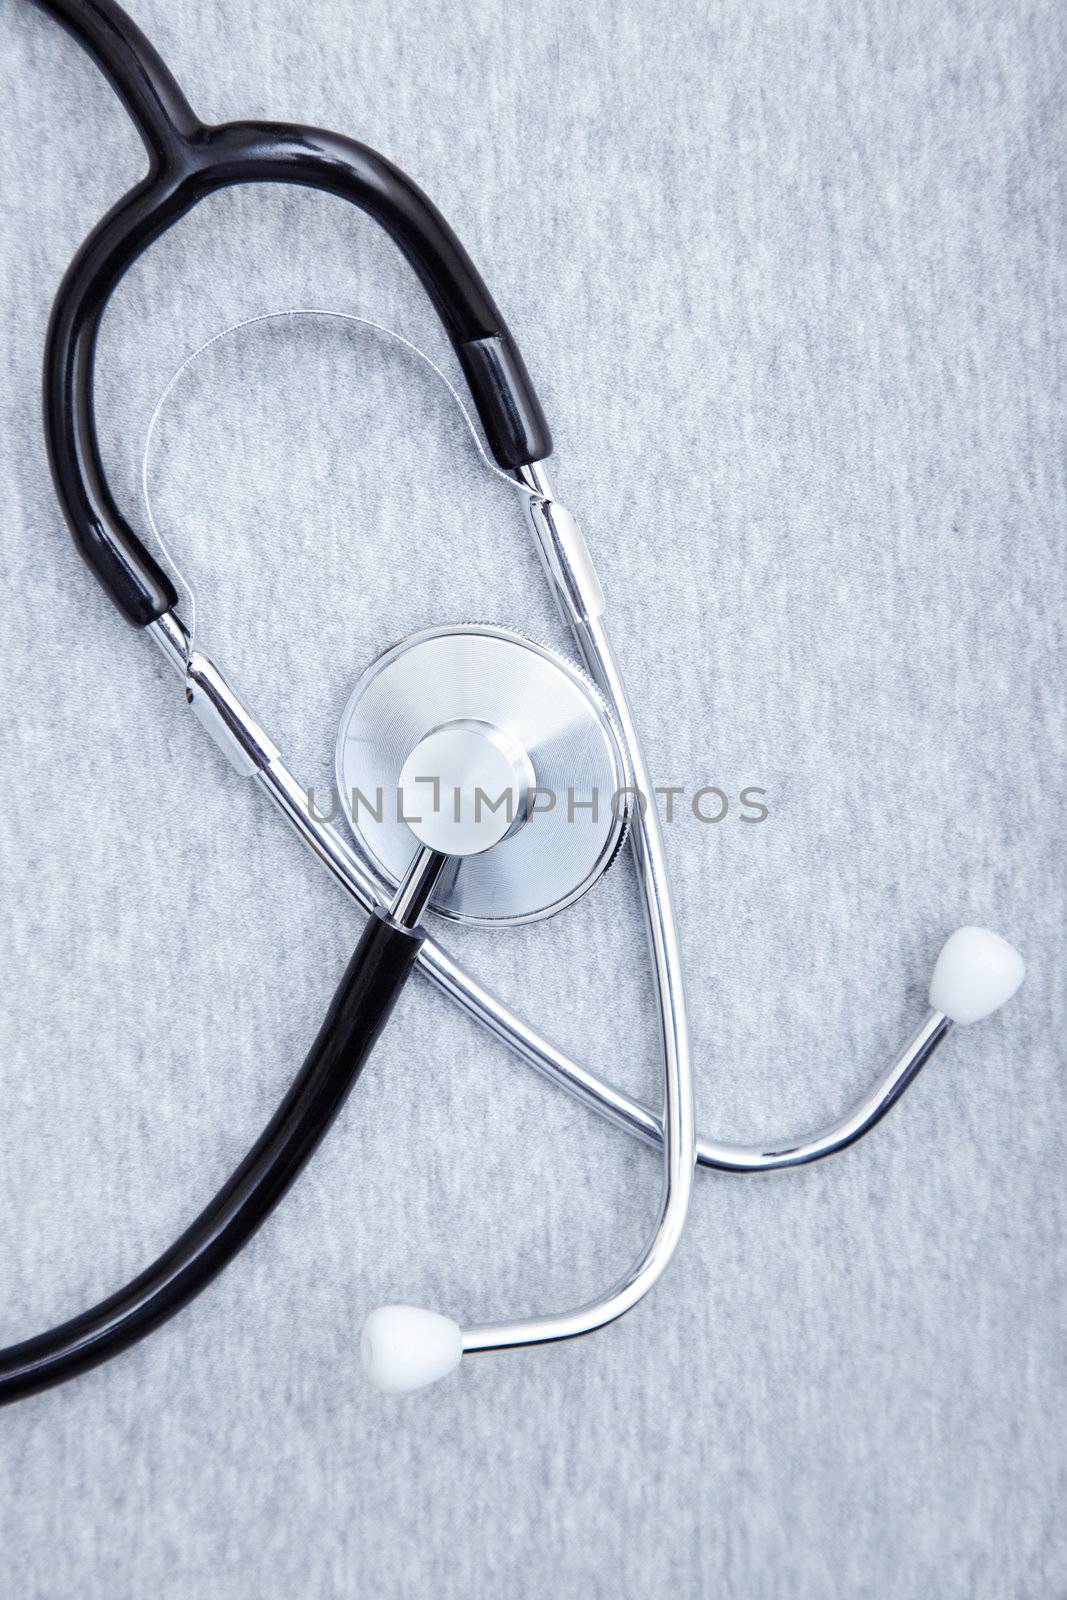 Stethoscope by Novic